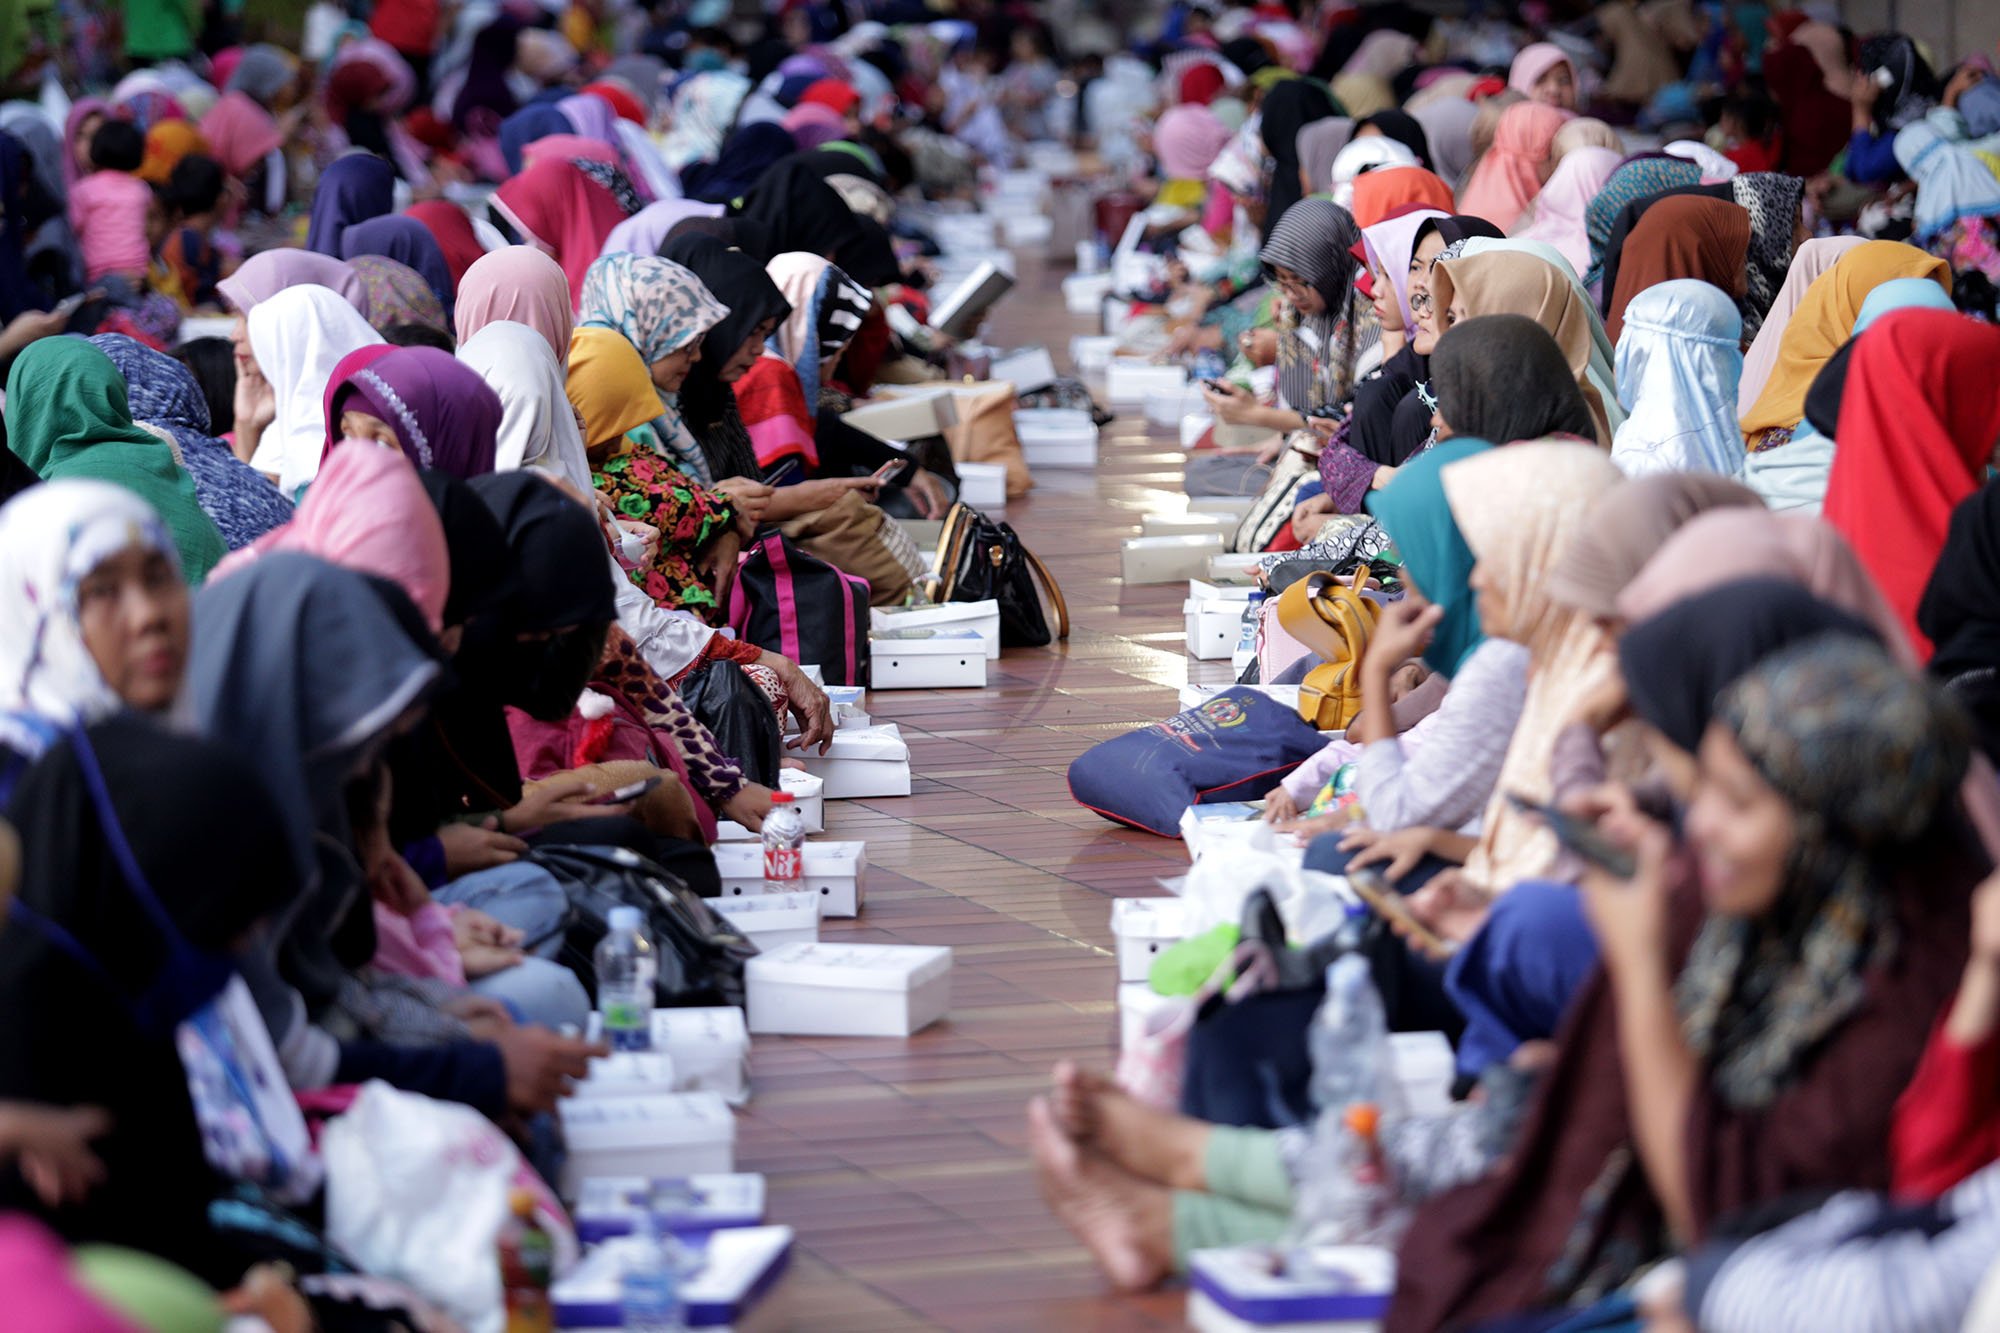 Umat muslim berbuka puasa di Masjid Istiqlal, Jakarta, Kamis (7/5). Selama bulan Ramadan pengurus Masjid Istiqlal menyediakan kurang lebih tiga ribu nasi bungkus dan takjil setiap hari untuk buka puasa bersama.